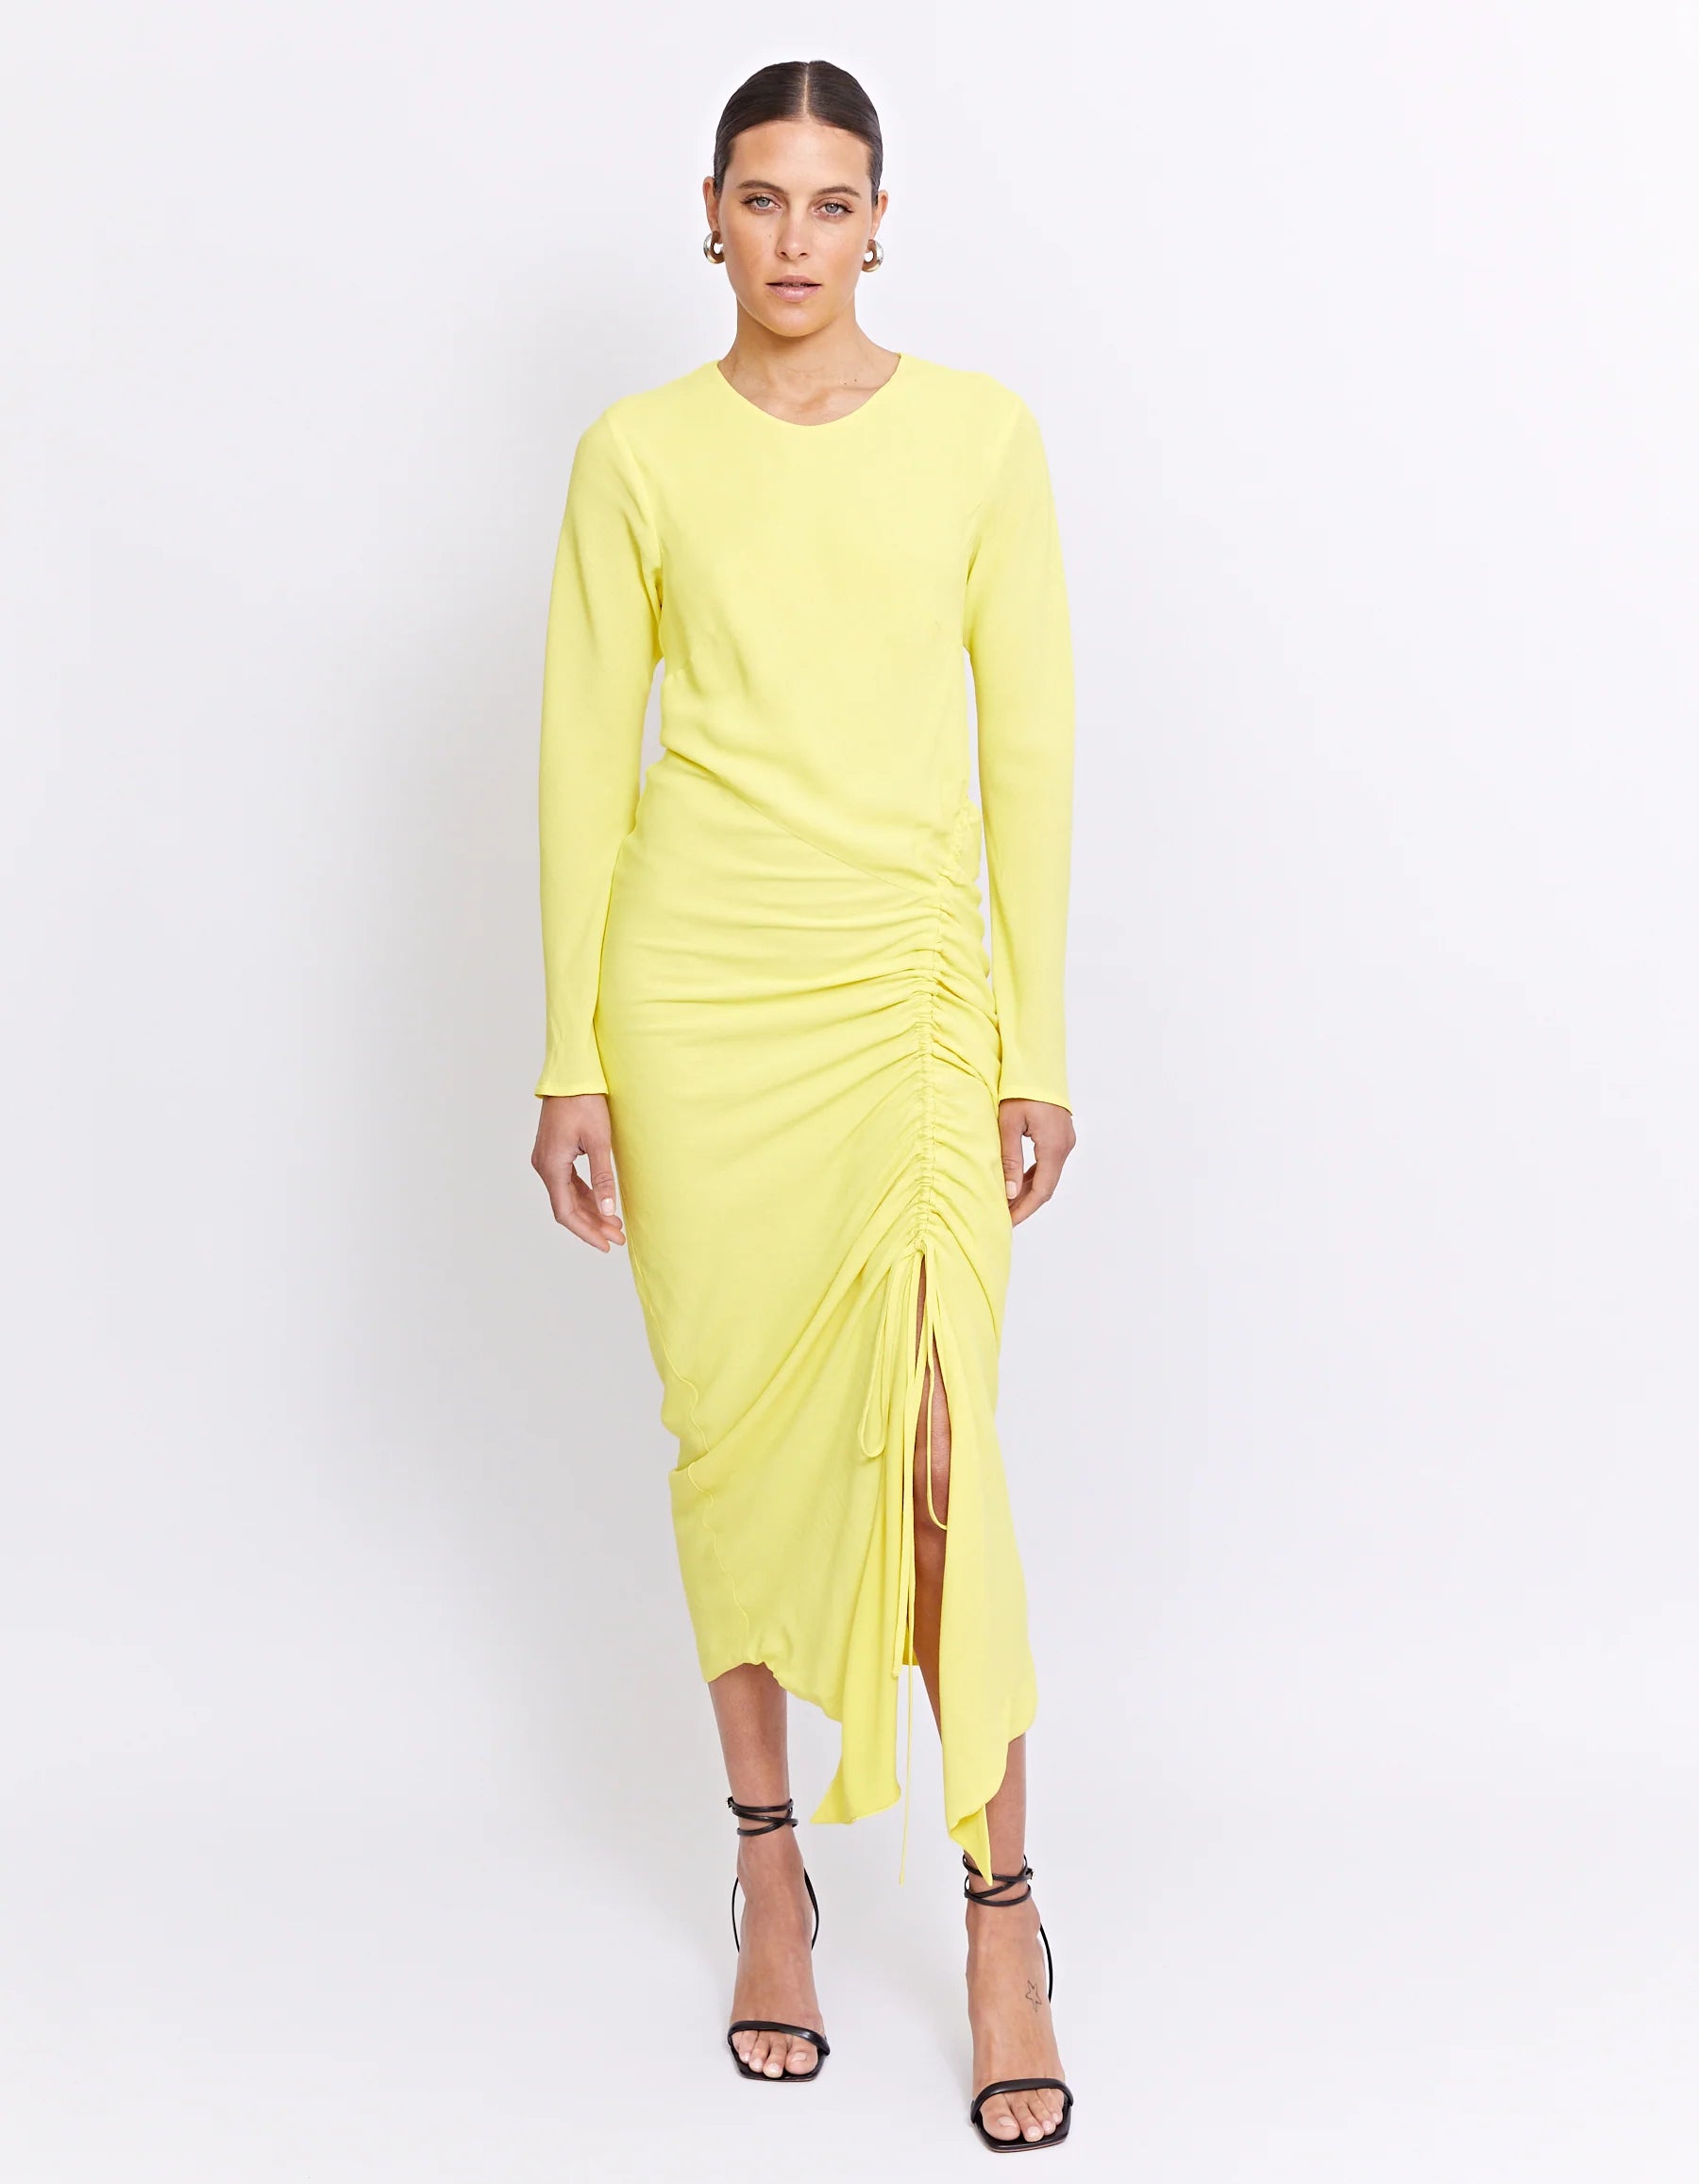 Rowan Dress - Lemon